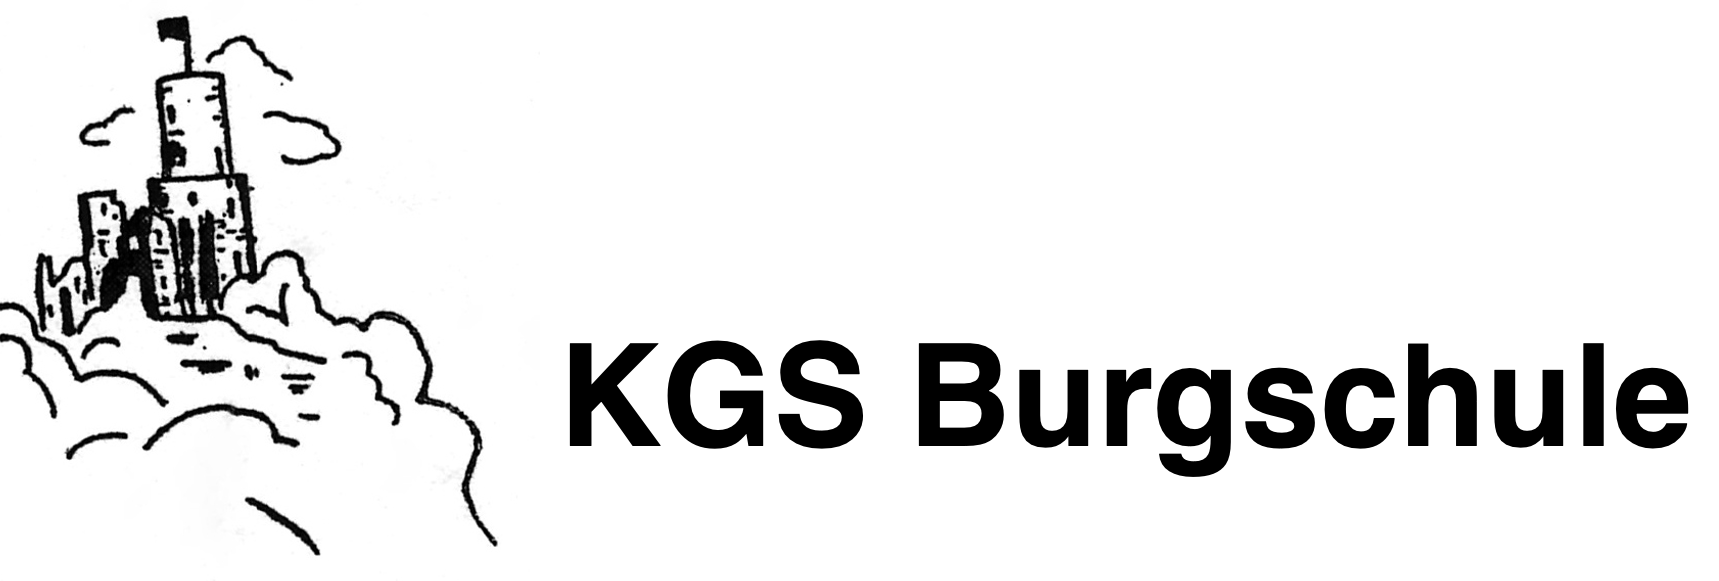 KGS Burgschule